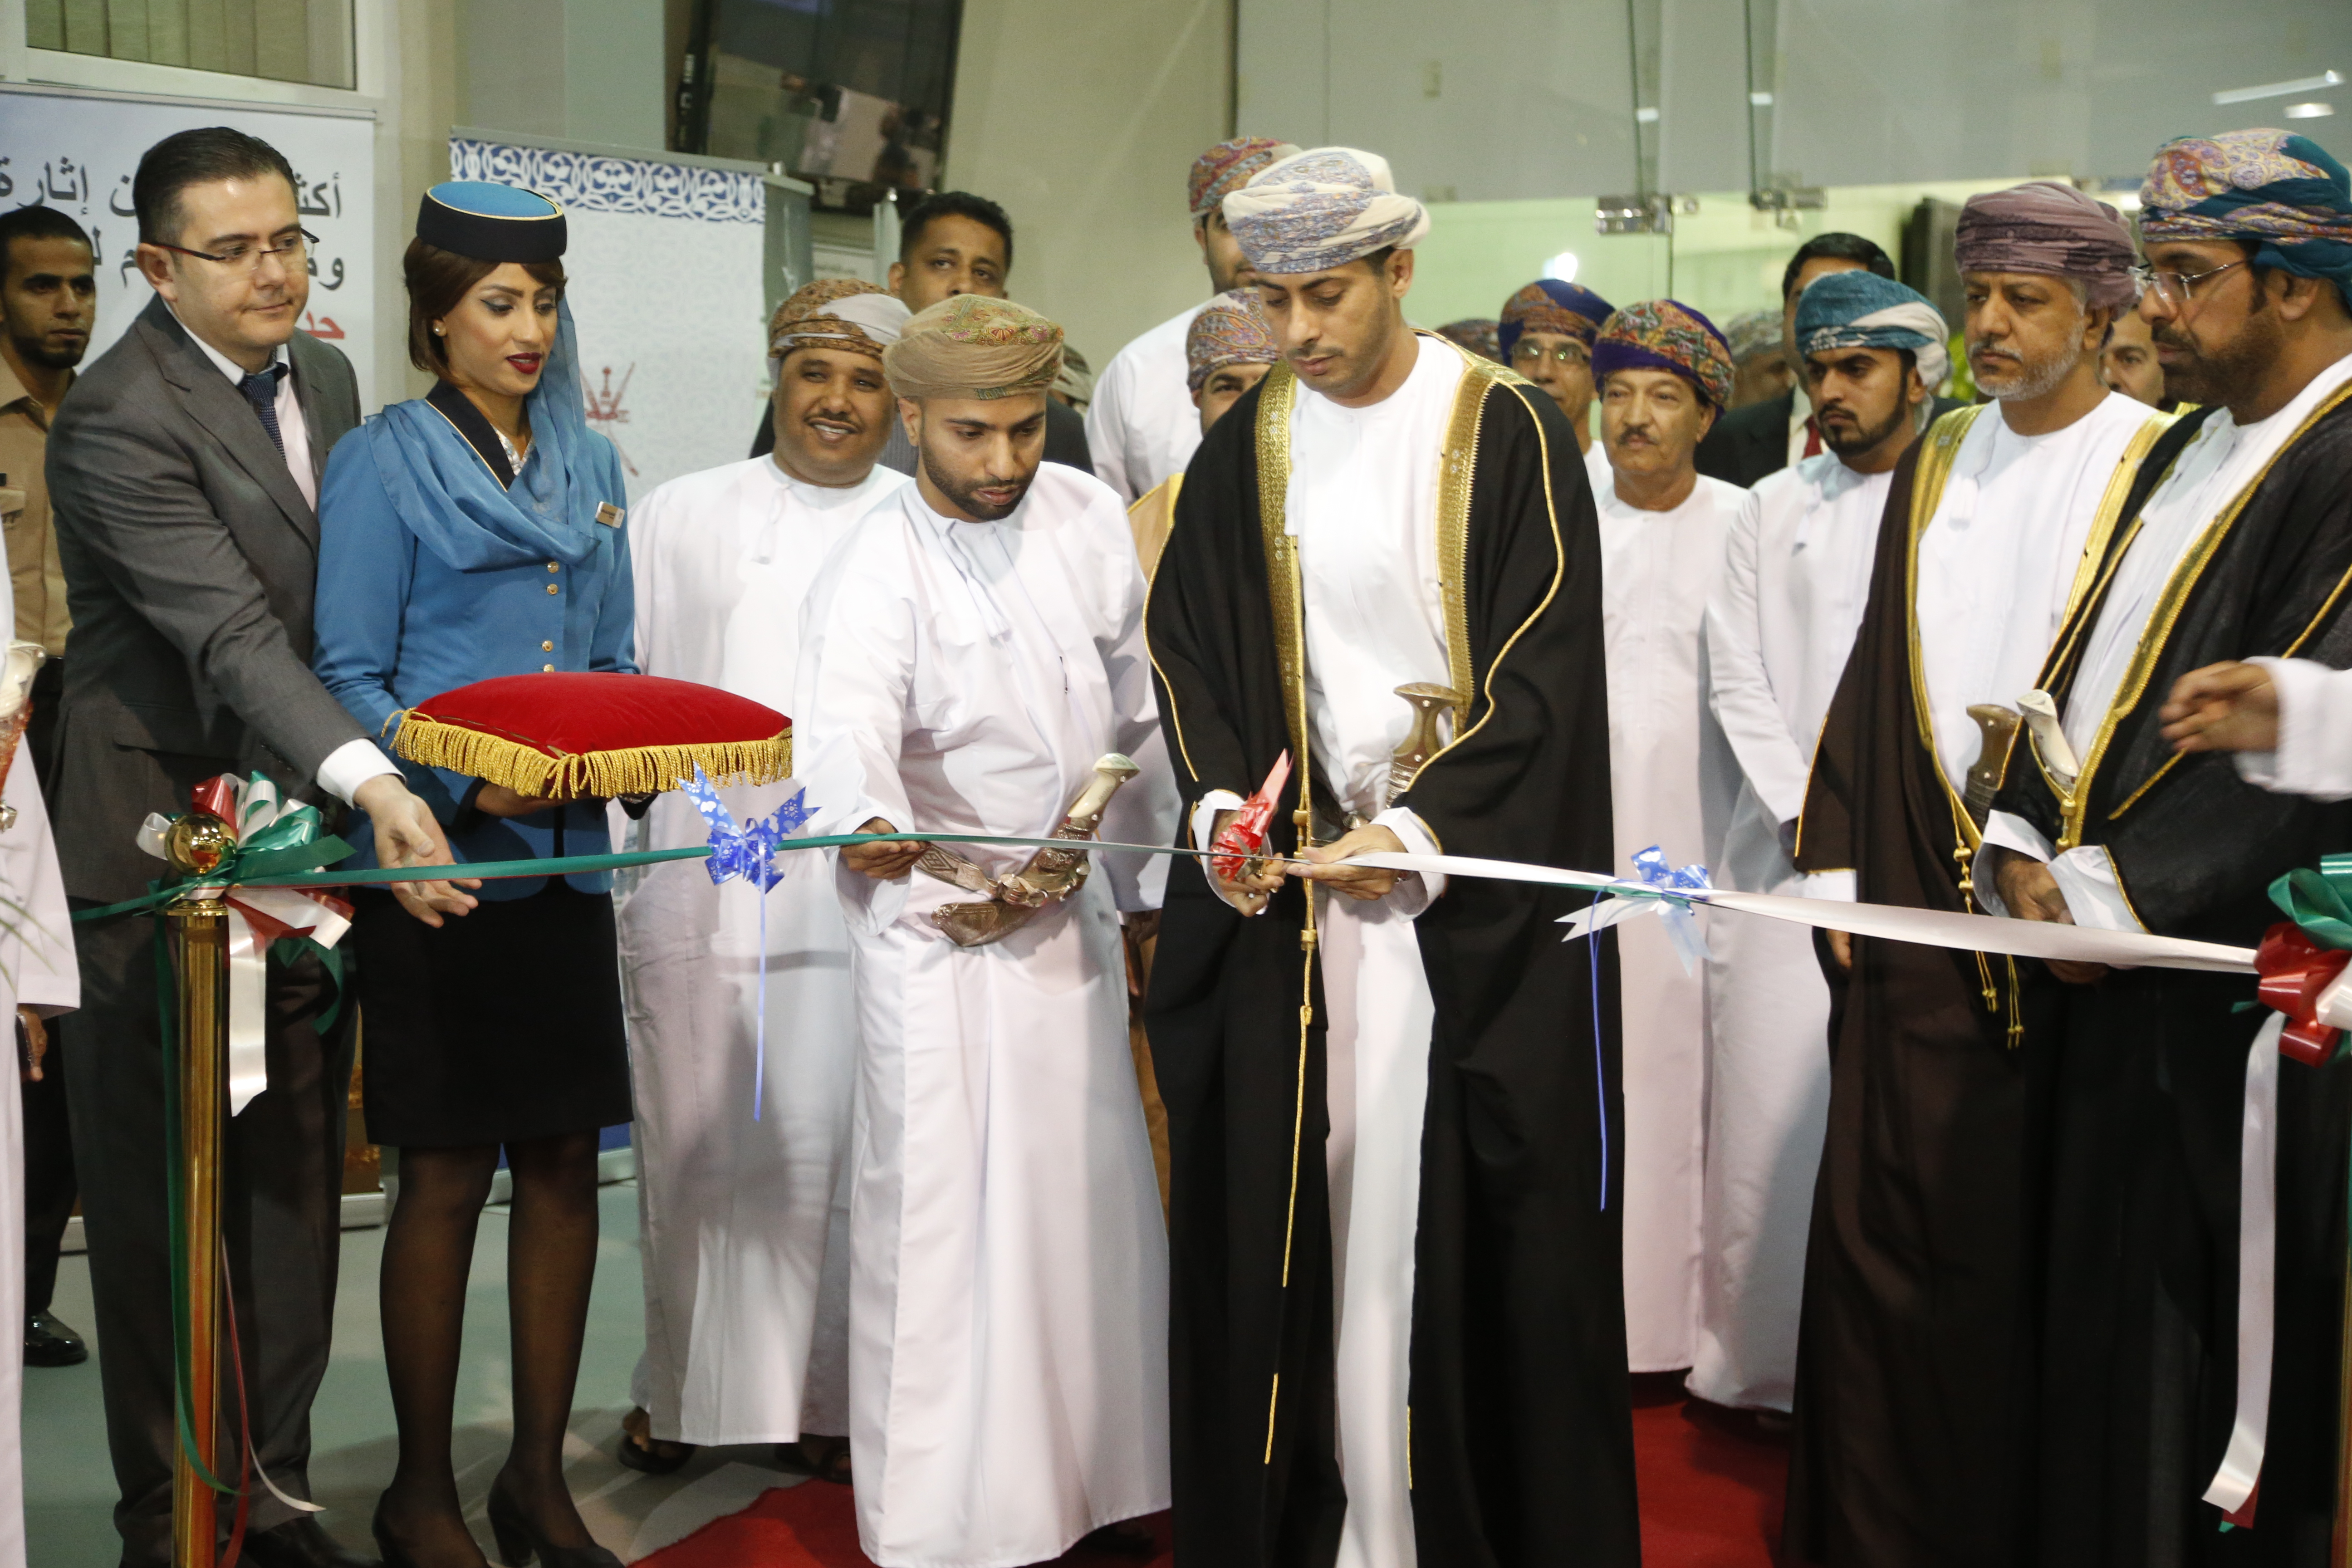 Sheikh Saad Al Saadi inaugurates Oman Sports Exhibition